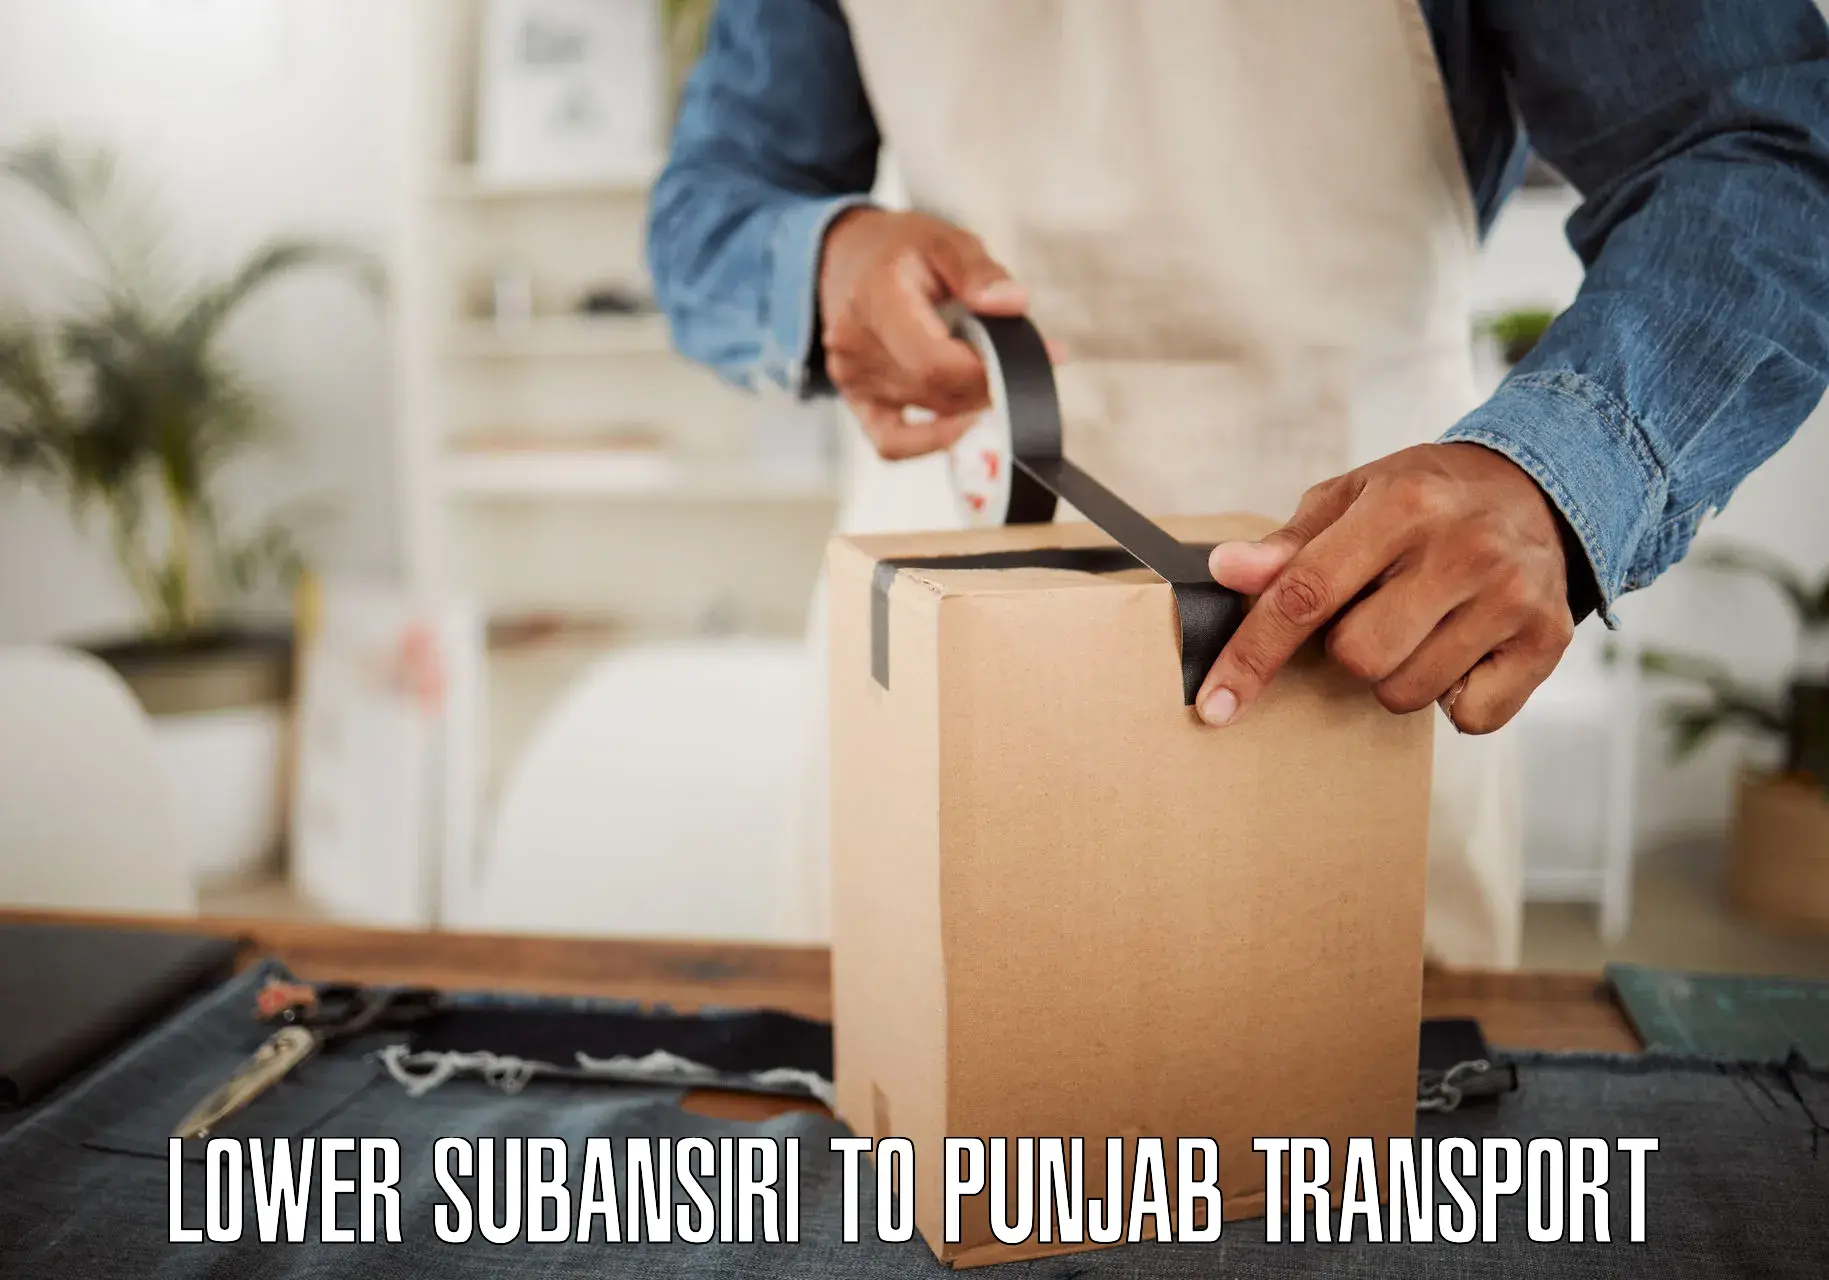 Online transport service in Lower Subansiri to Punjab